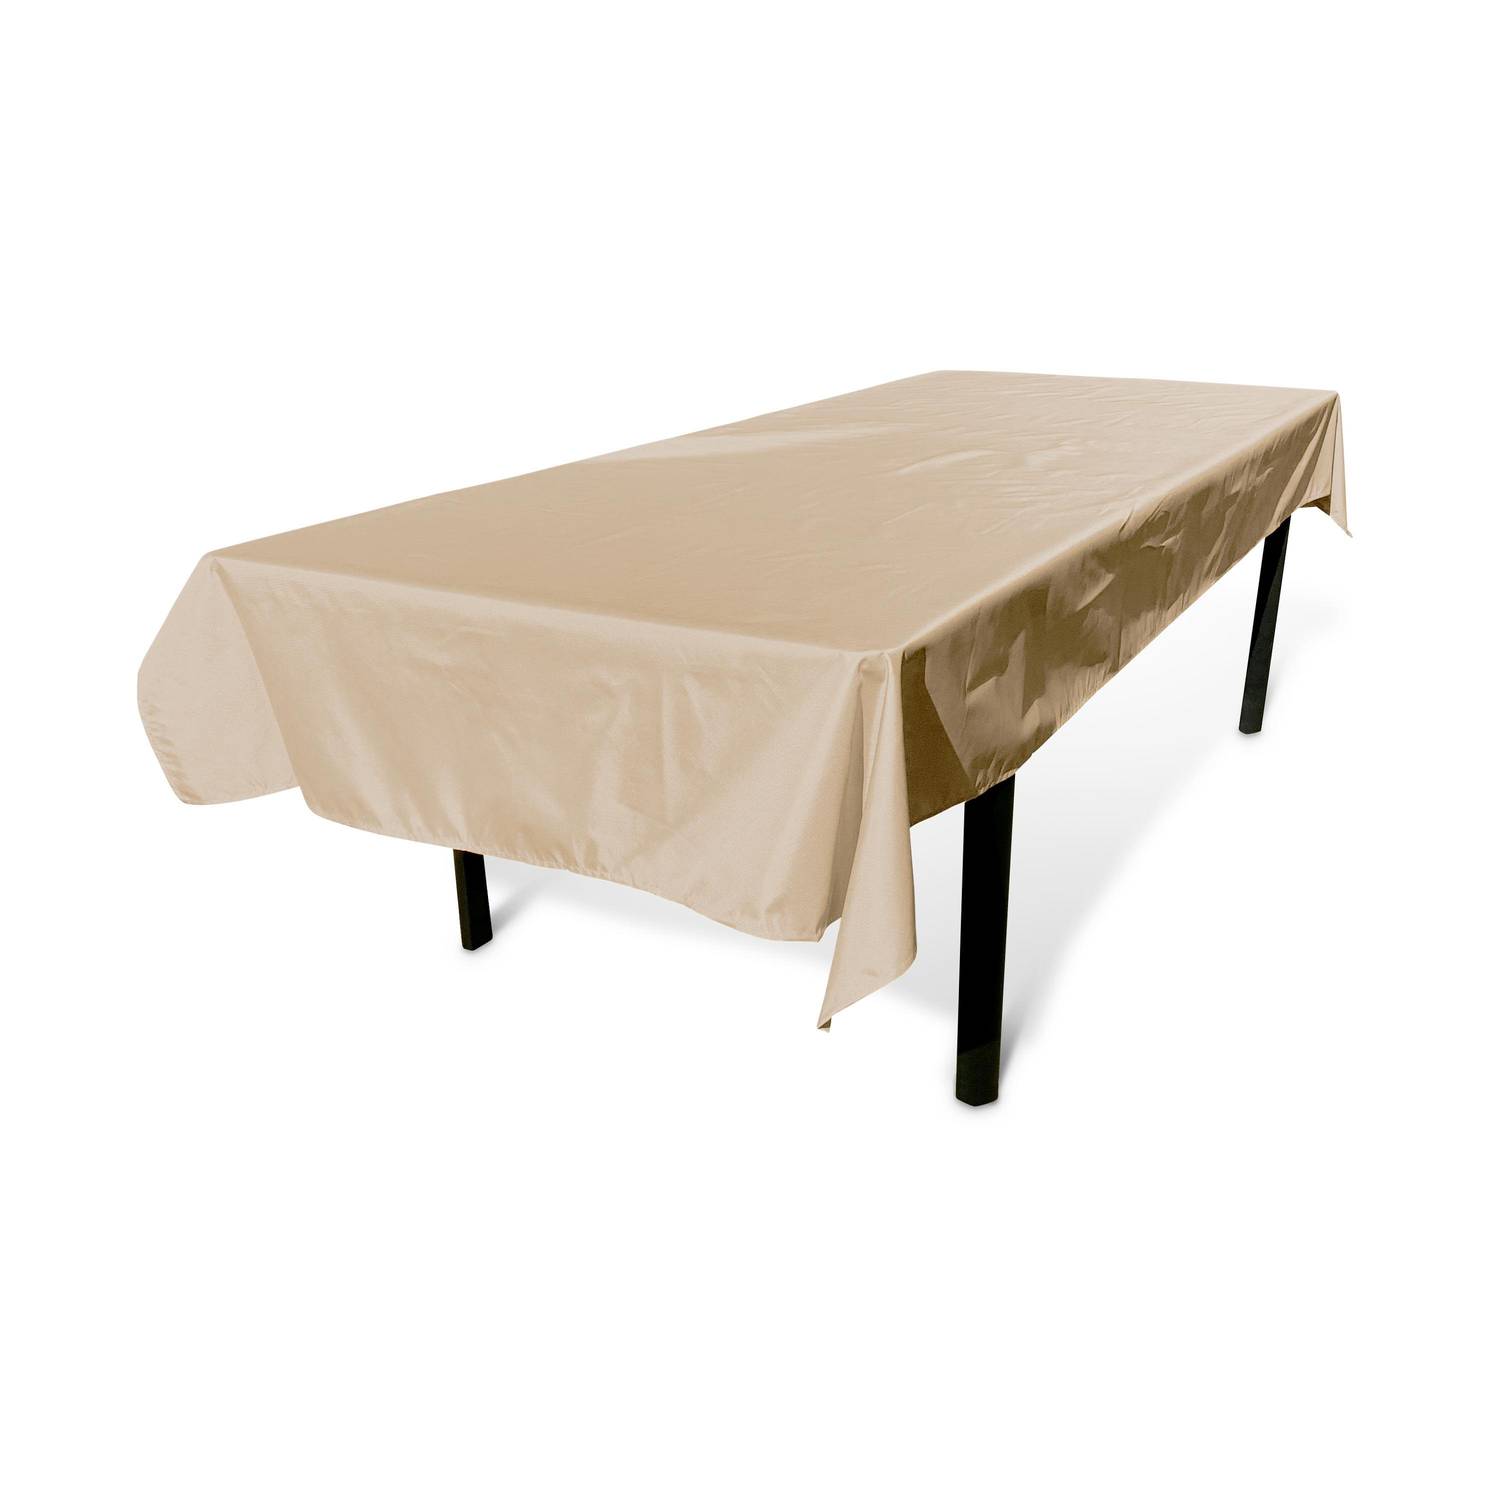 Collection EXOTIQUE - Outdoor-Tischdecke 300 x 140 cm Beige, 100% Polyester, schützt den Tisch, UV-Schutz, sommerlicher Stil Photo1